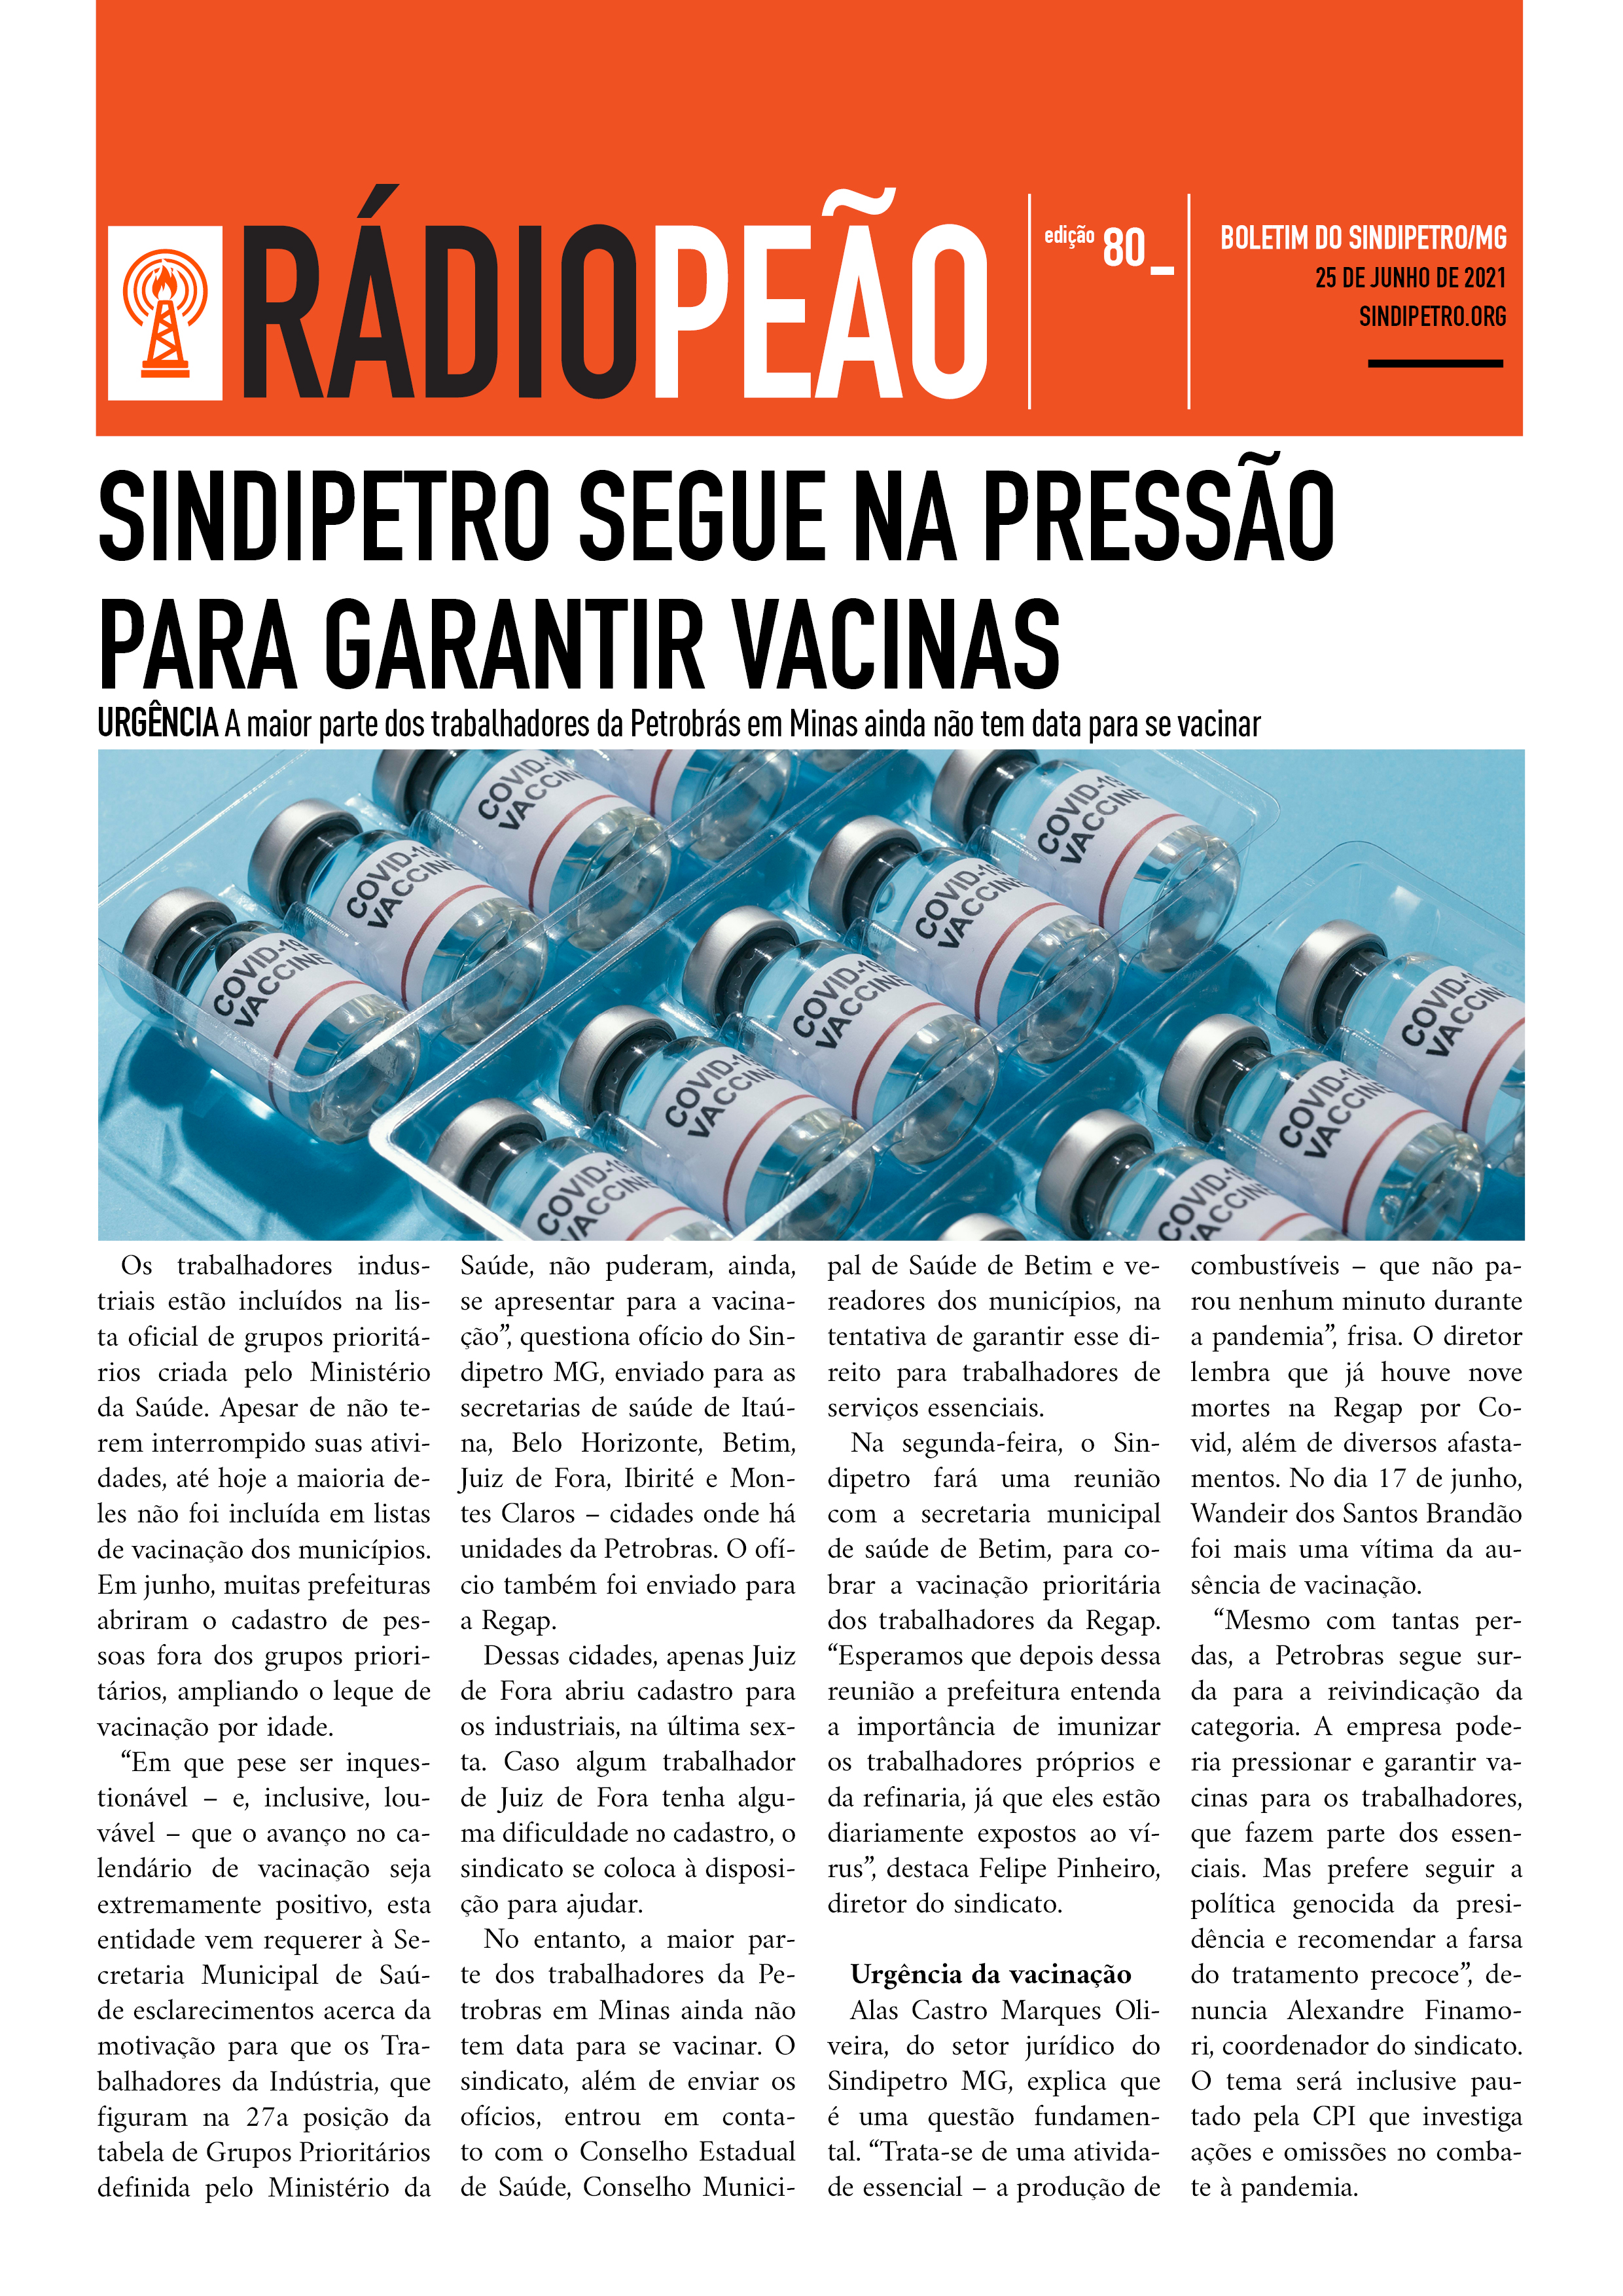 Sindipetro segue na pressão para garantir vacinas